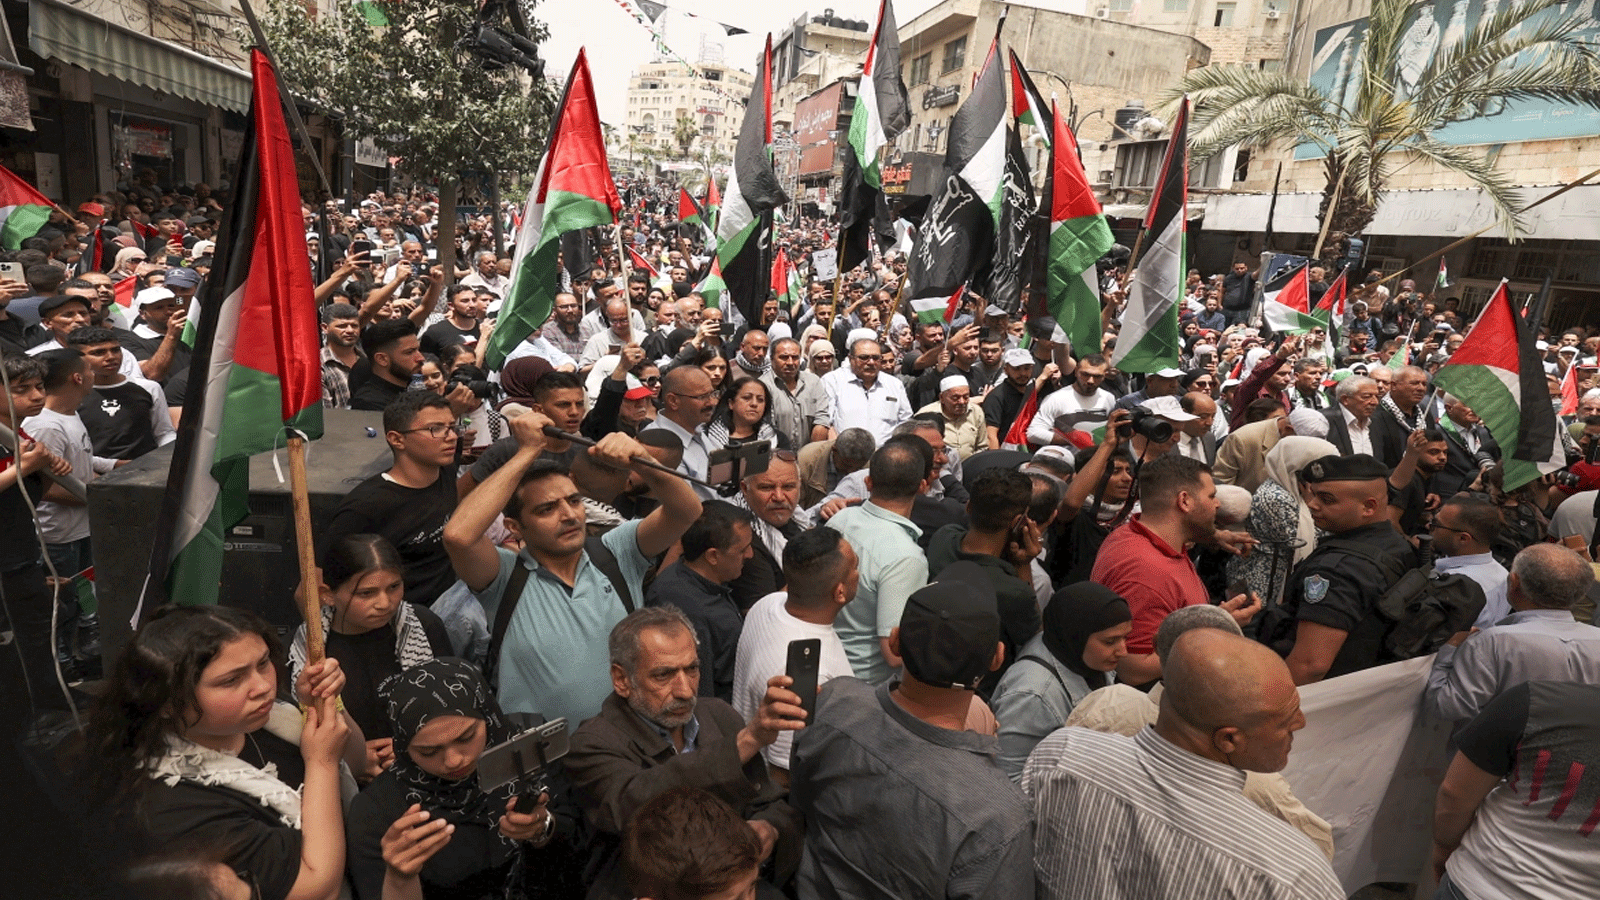  فلسطينيون يلوحون بالأعلام الوطنية وهم يسيرون في مسيرة لإحياء الذكرى 74 للنكبة في بلدة رام الله المحتلة بالضفة الغربية